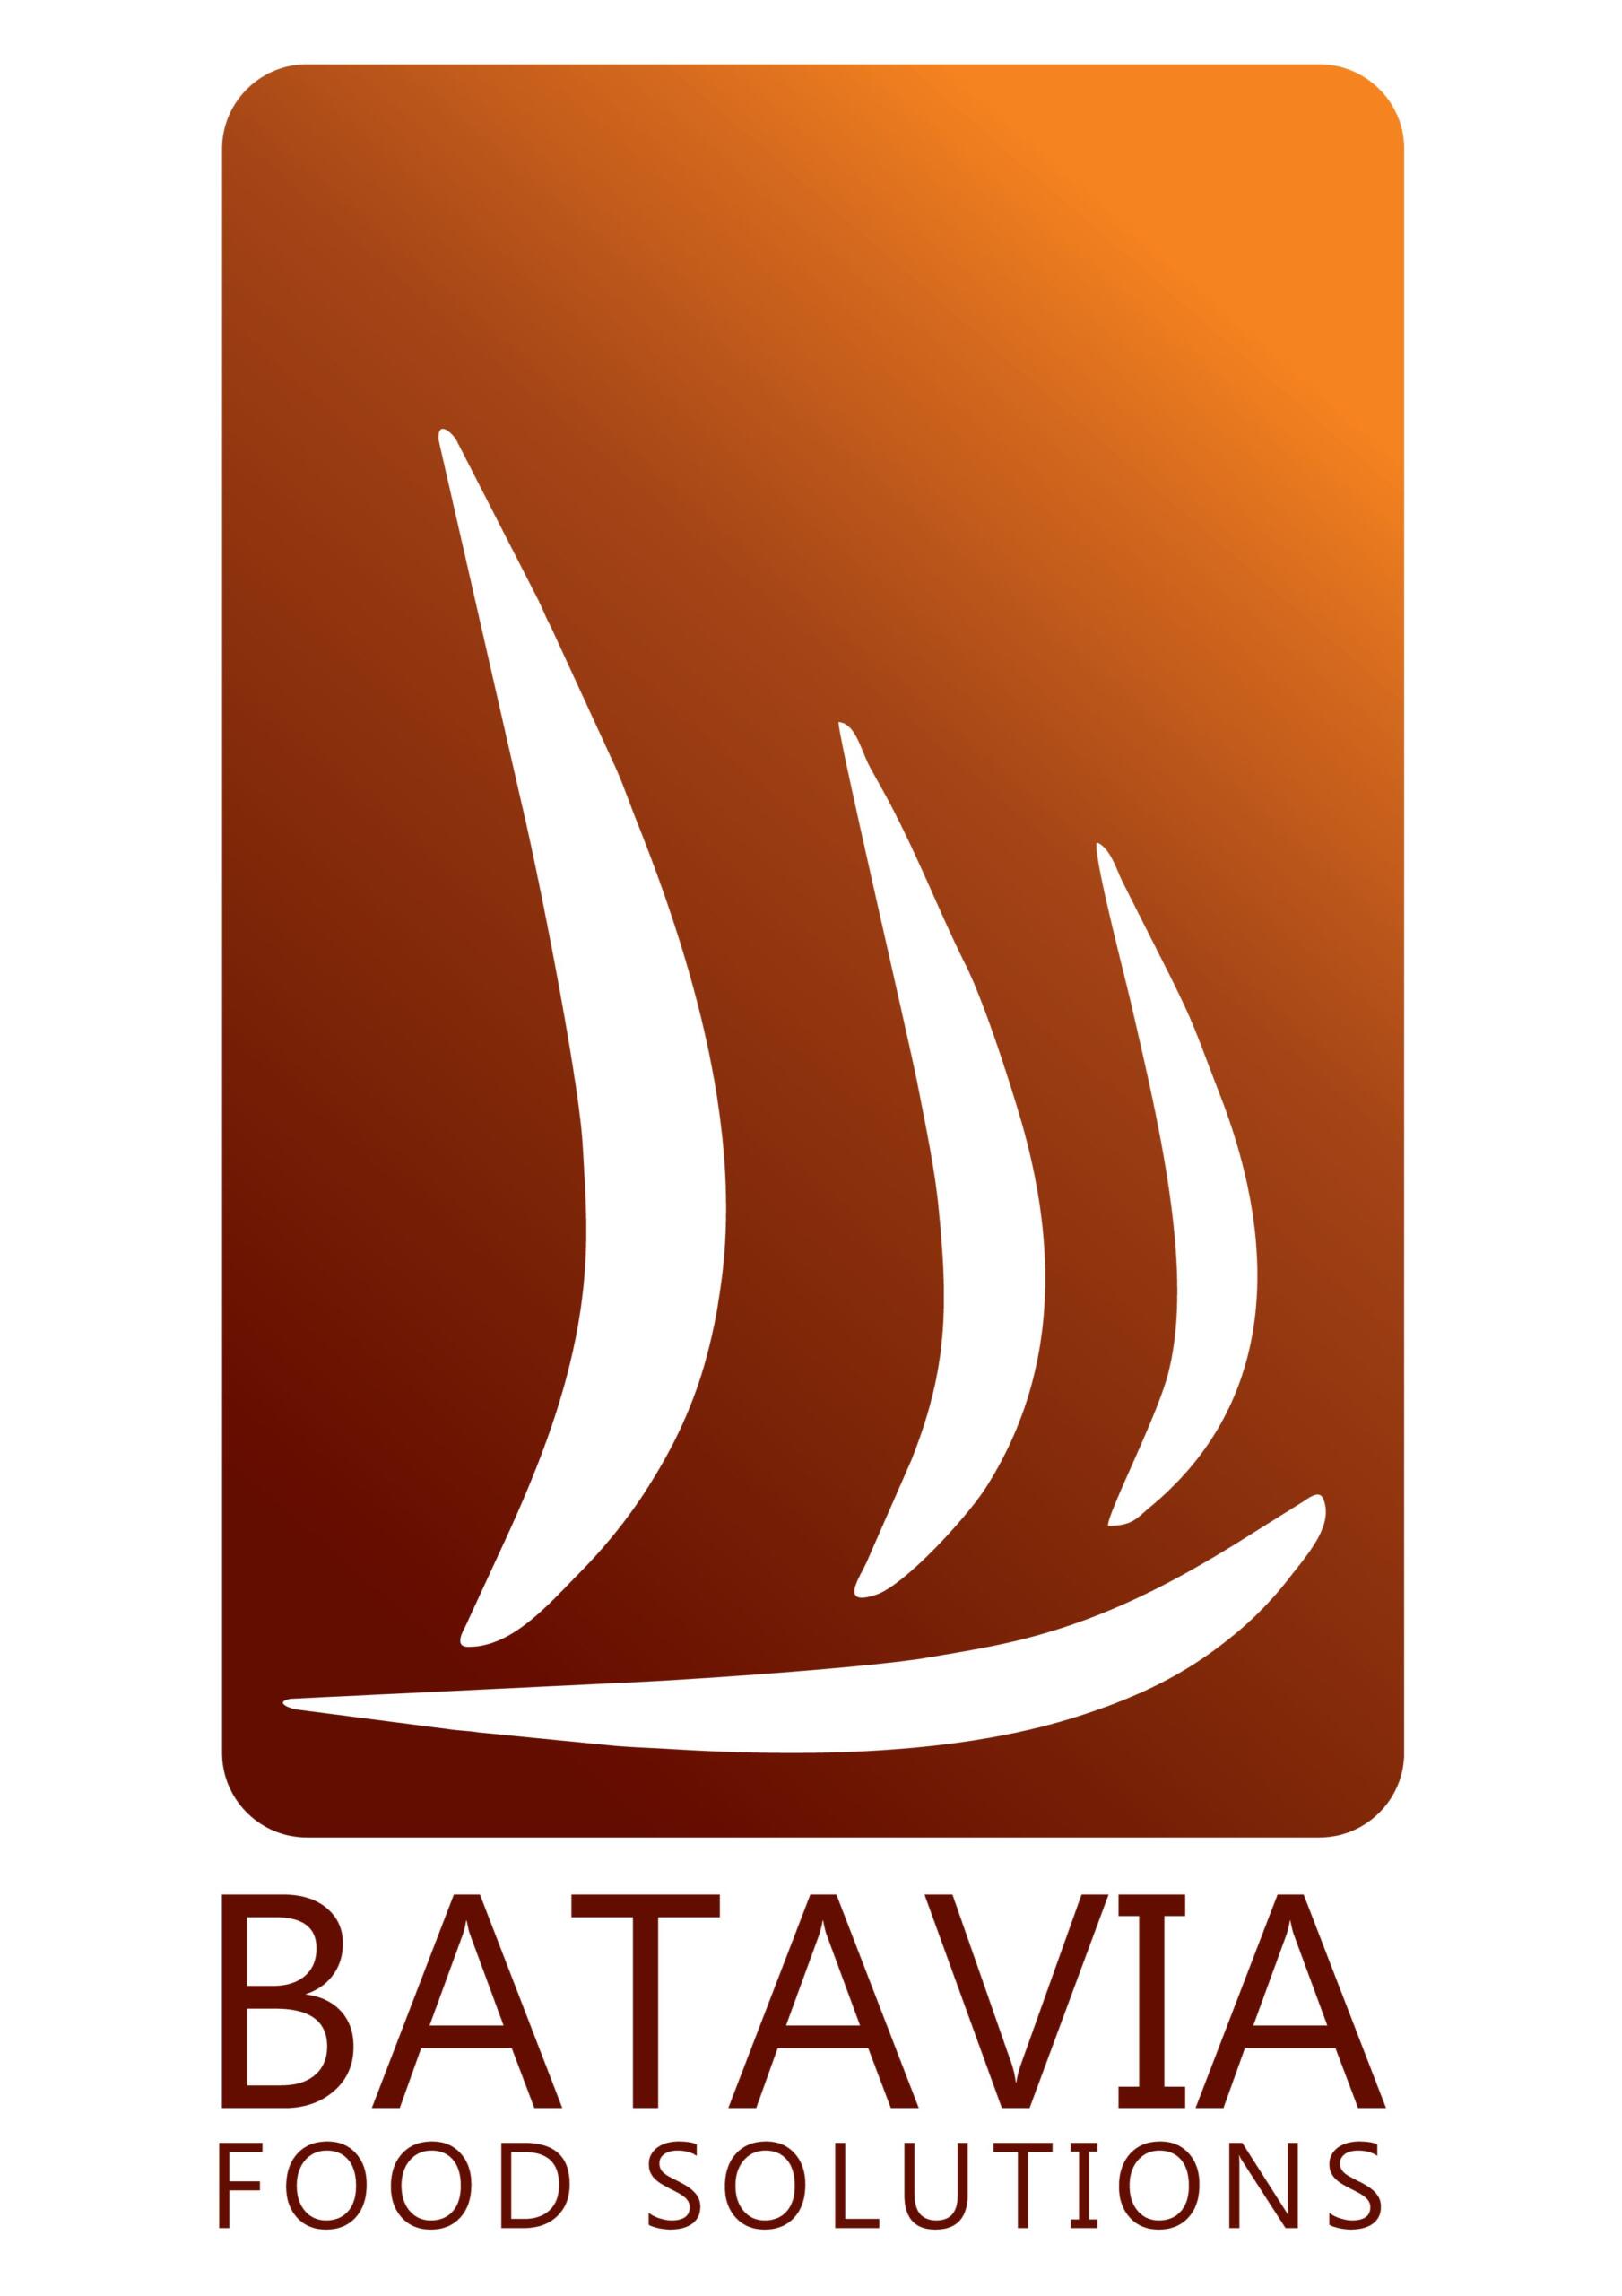 Batavia Cocoa & Chocolate